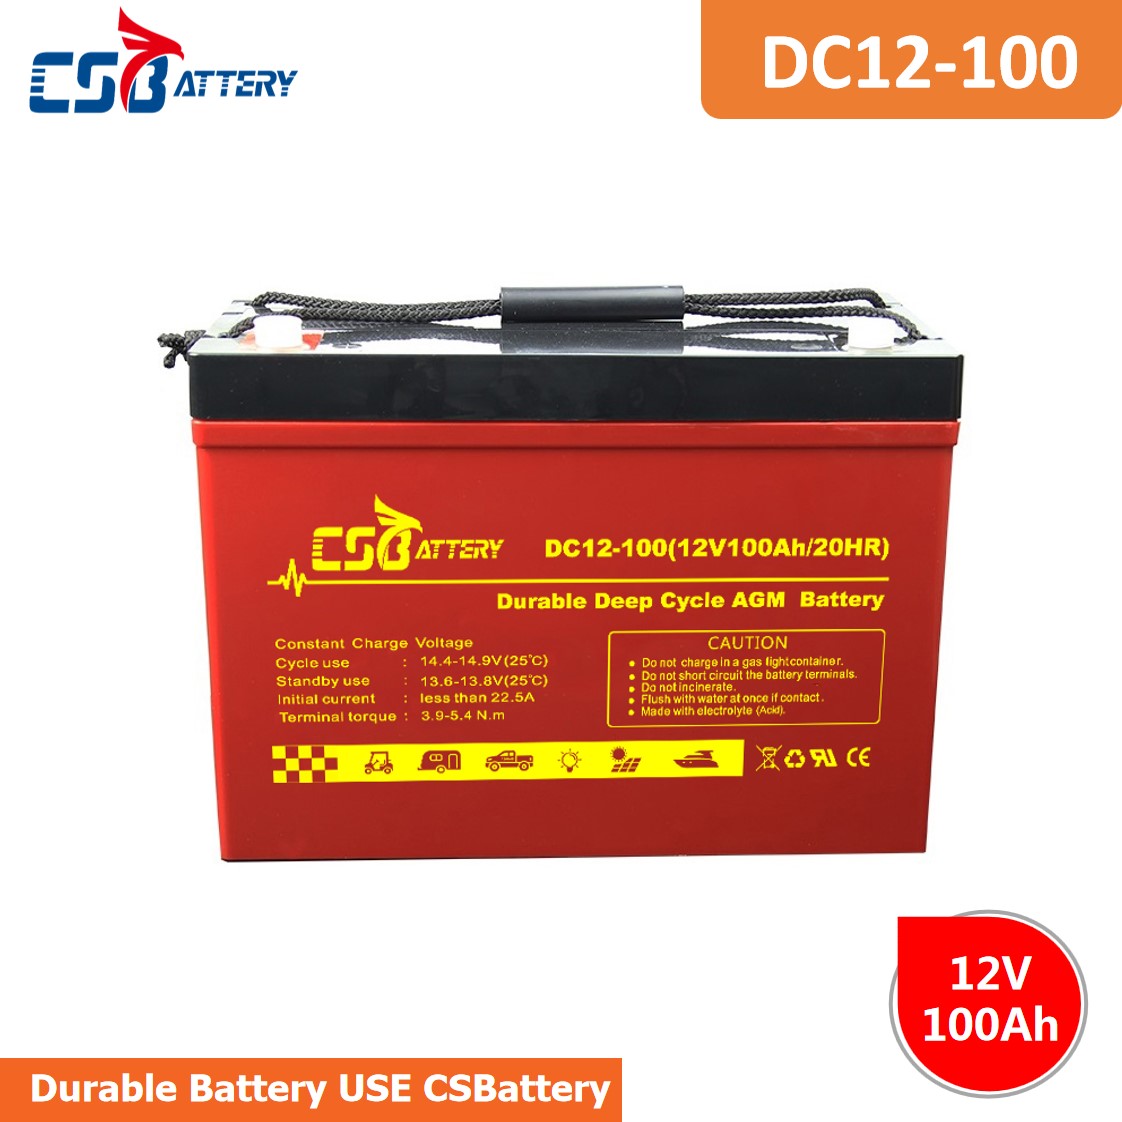 DC12-100 12V 100Ah Deep Cycle AGM Battery